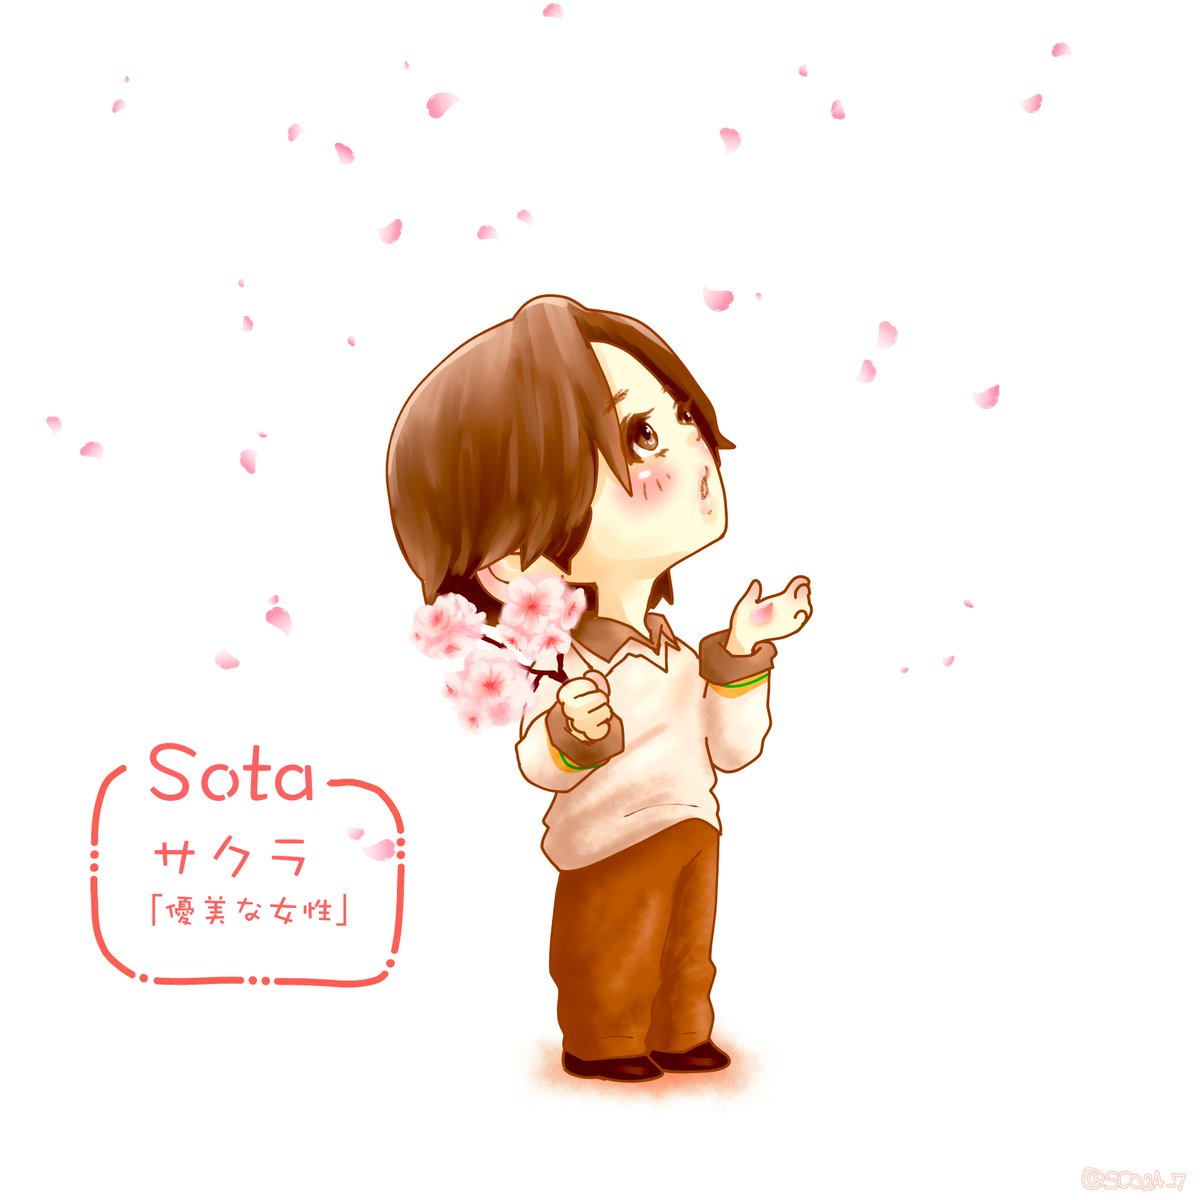 春びふぁ
SOTAにサクラ🌸

#BEFIRSTファンアート 
#SOTA